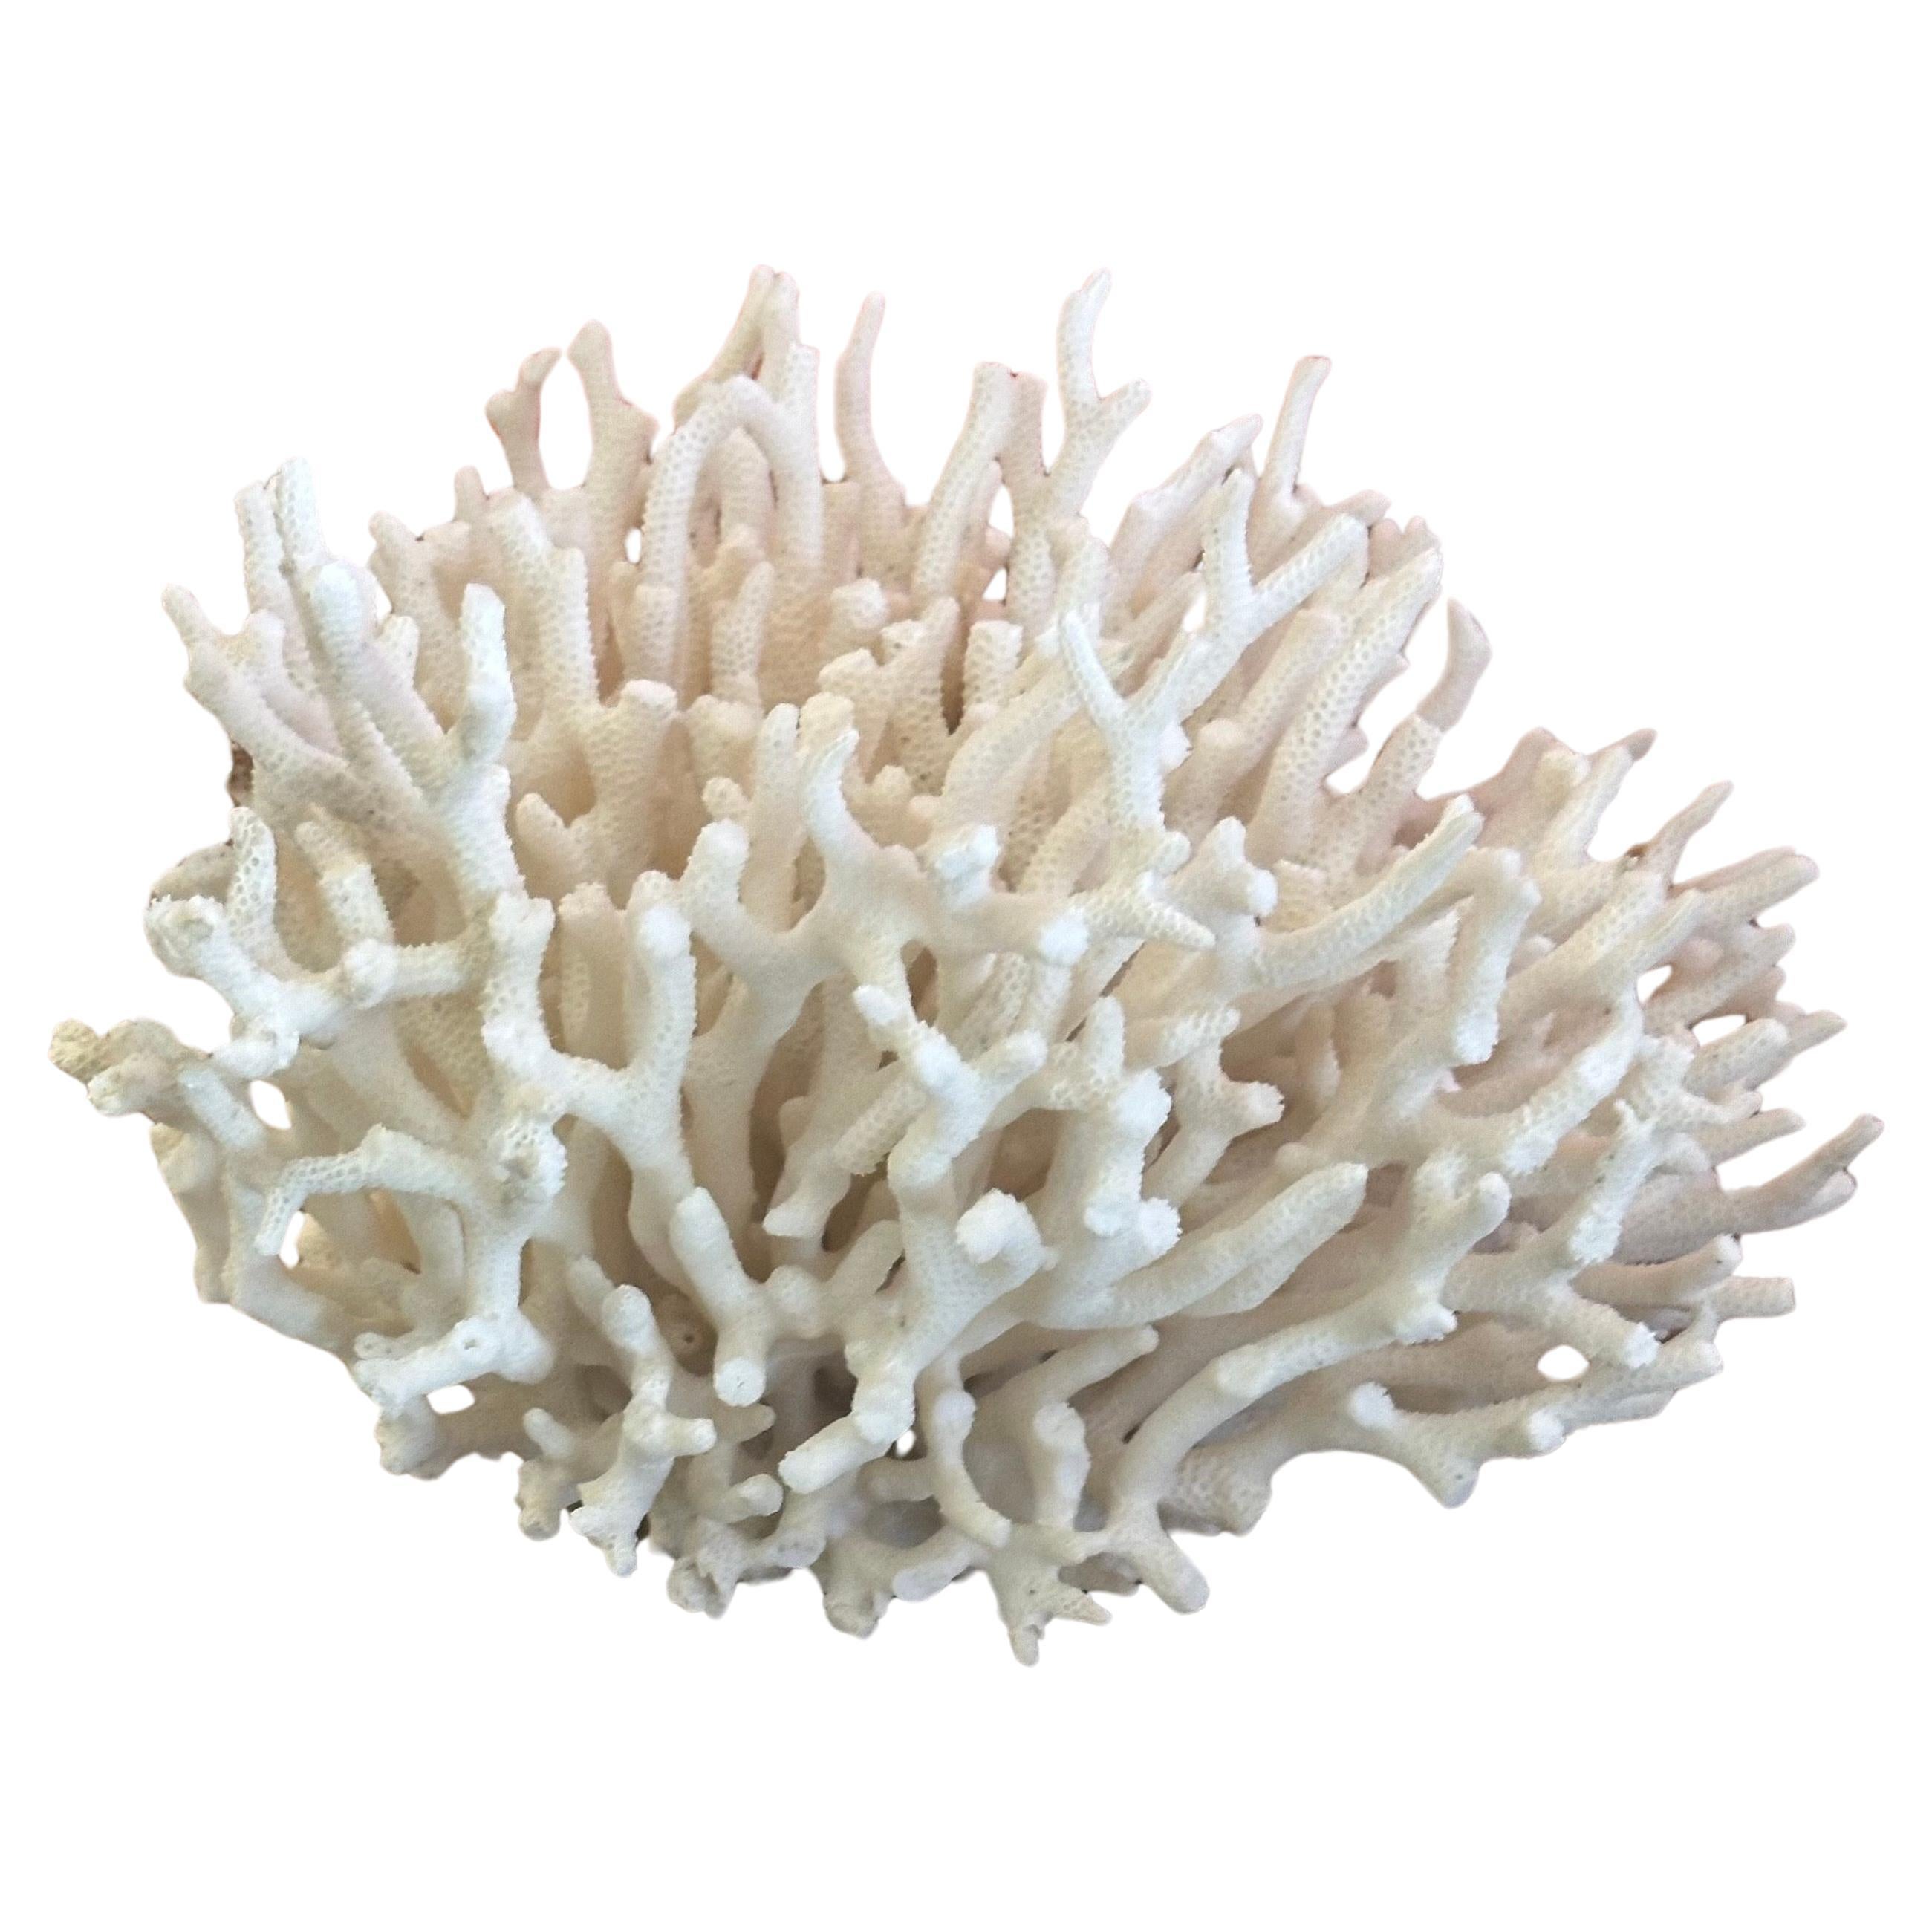 Natural White Sea Coral Specimen For Sale